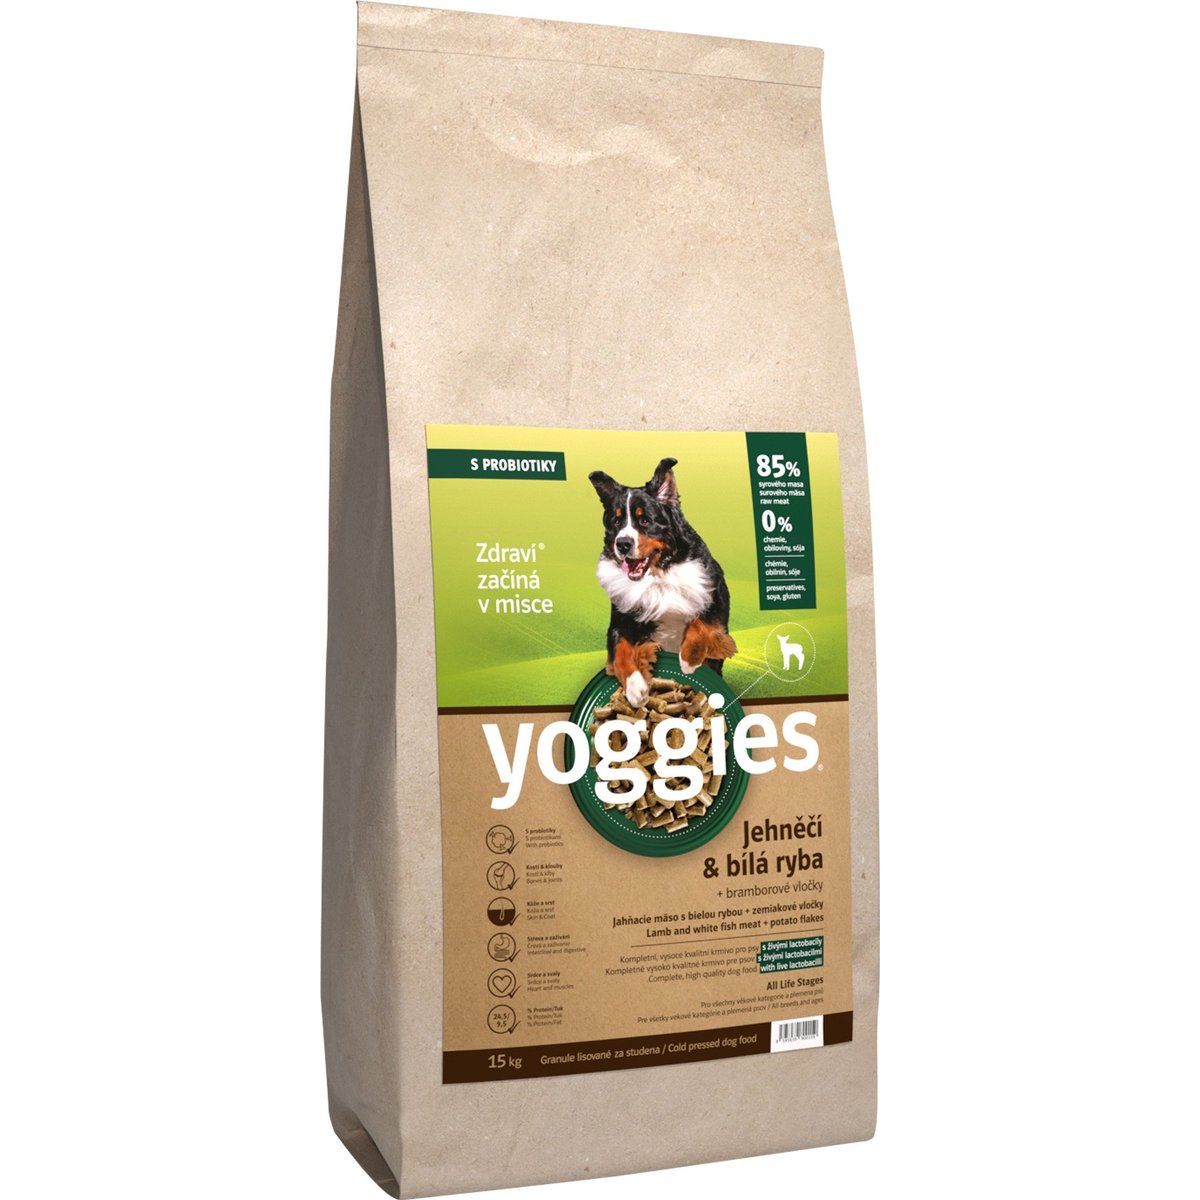 Yoggies Jehněčí a bílá ryba – granule s laktobacily pro psy